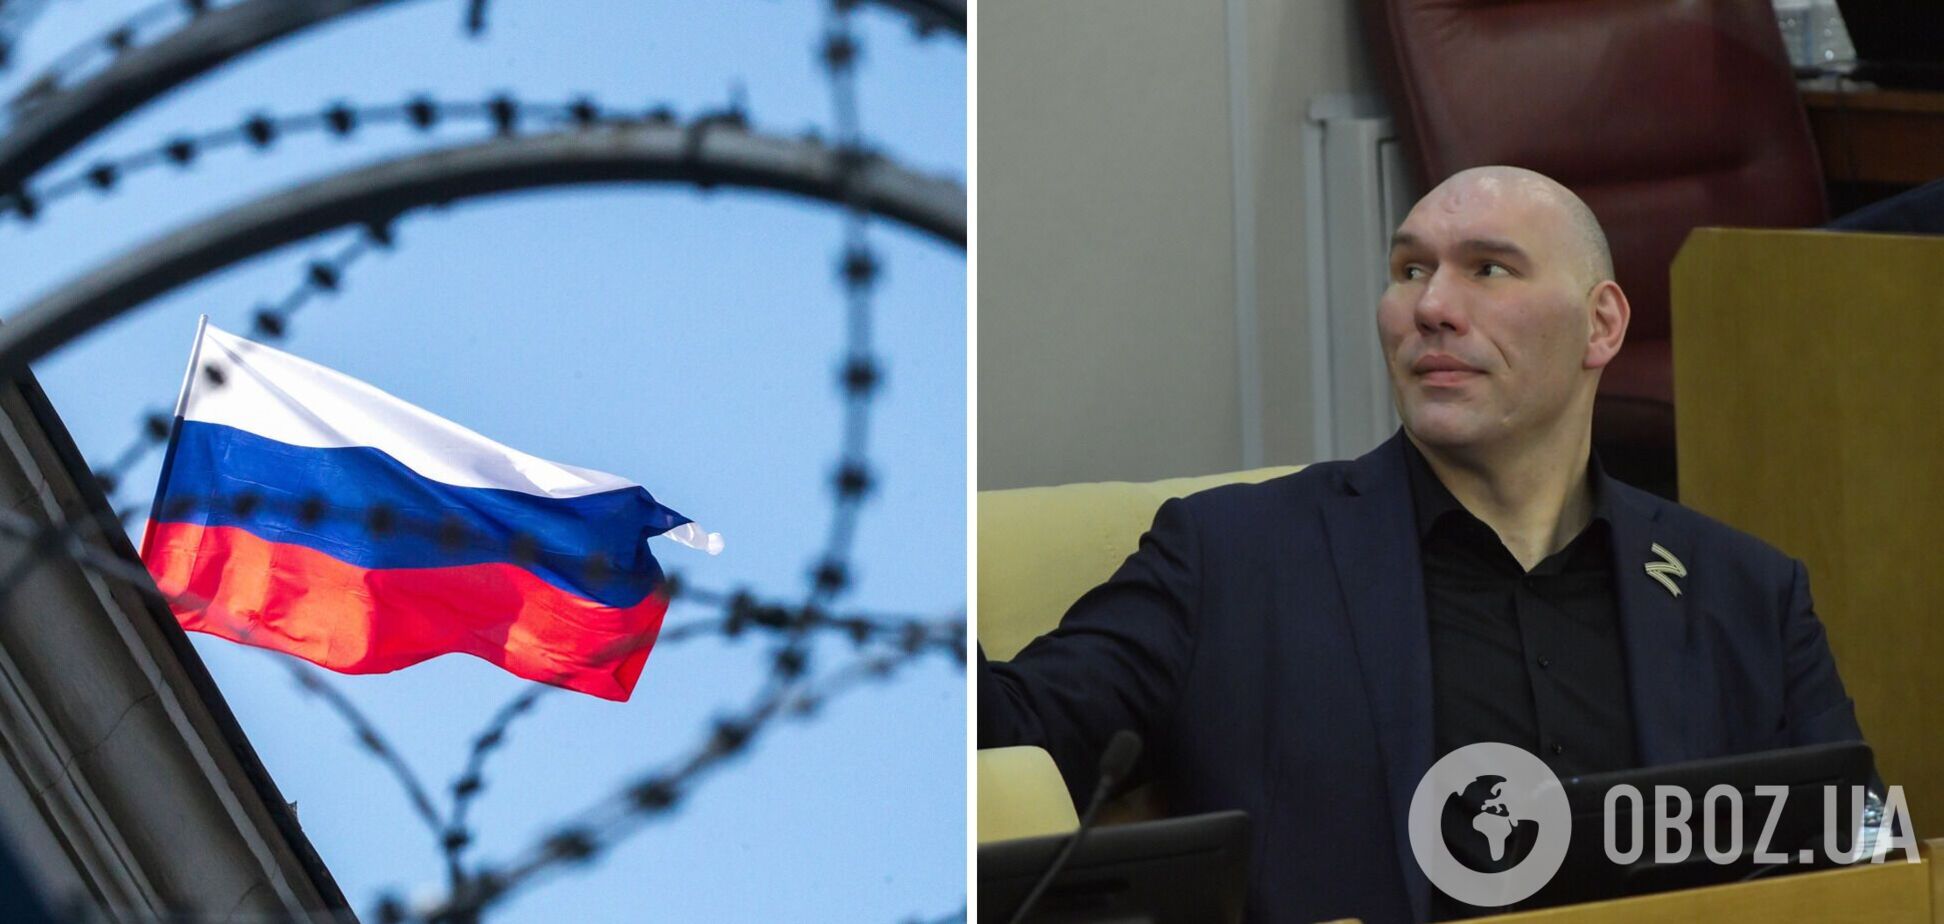 'Не участвуют сильнейшие': Валуев назвал нелегитимными соревнования без участия россиян